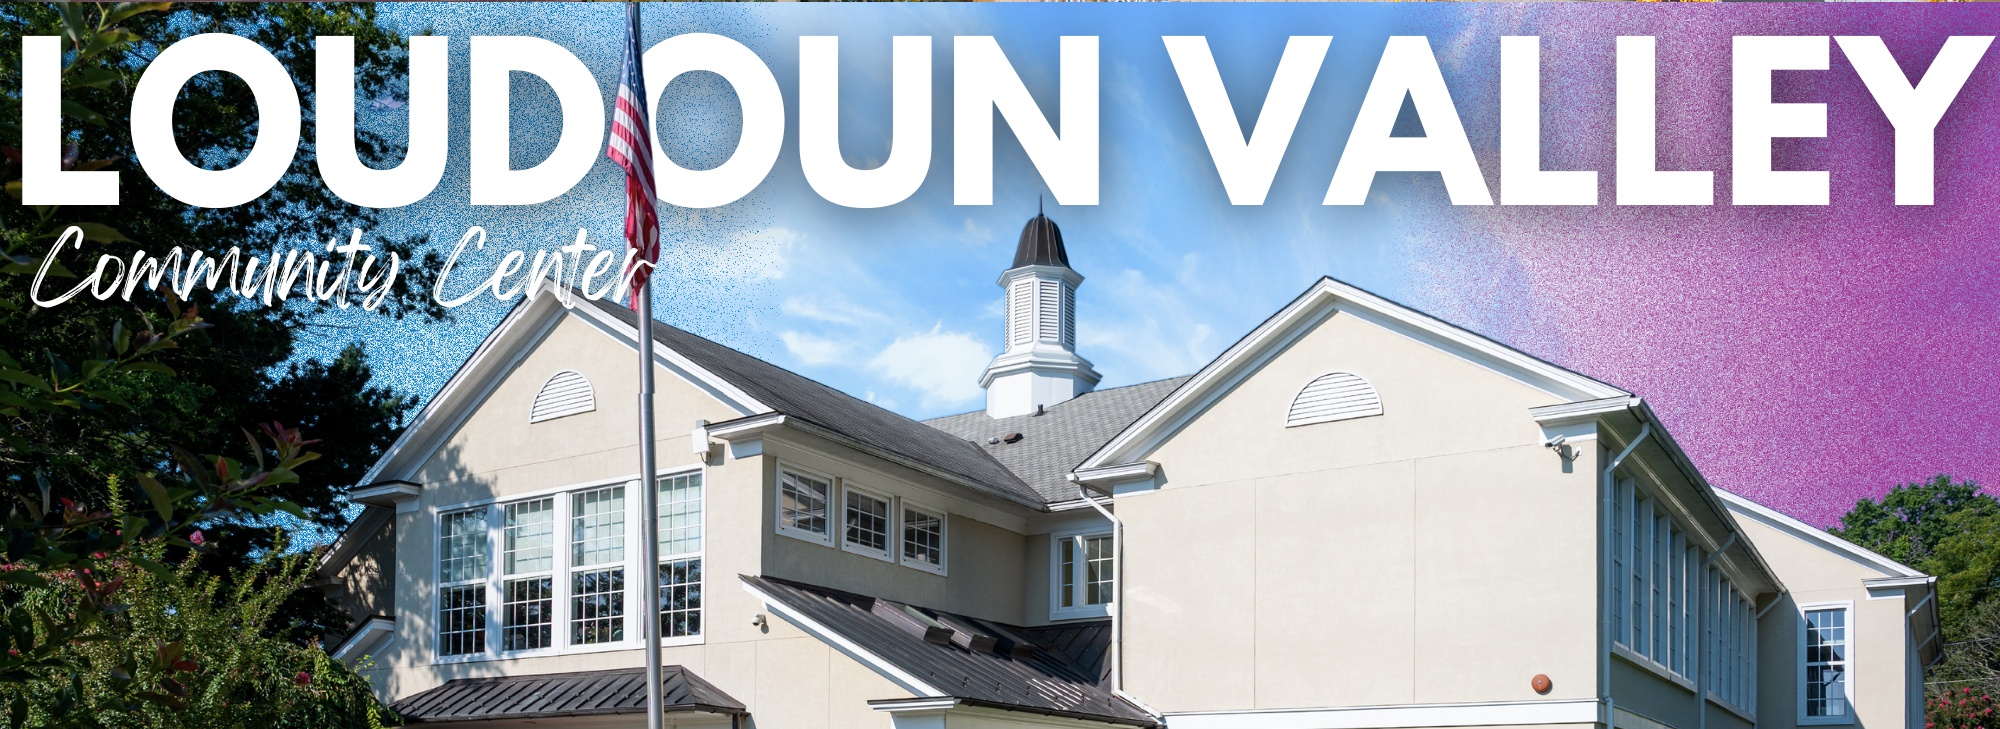 Loudoun Valley Community Center